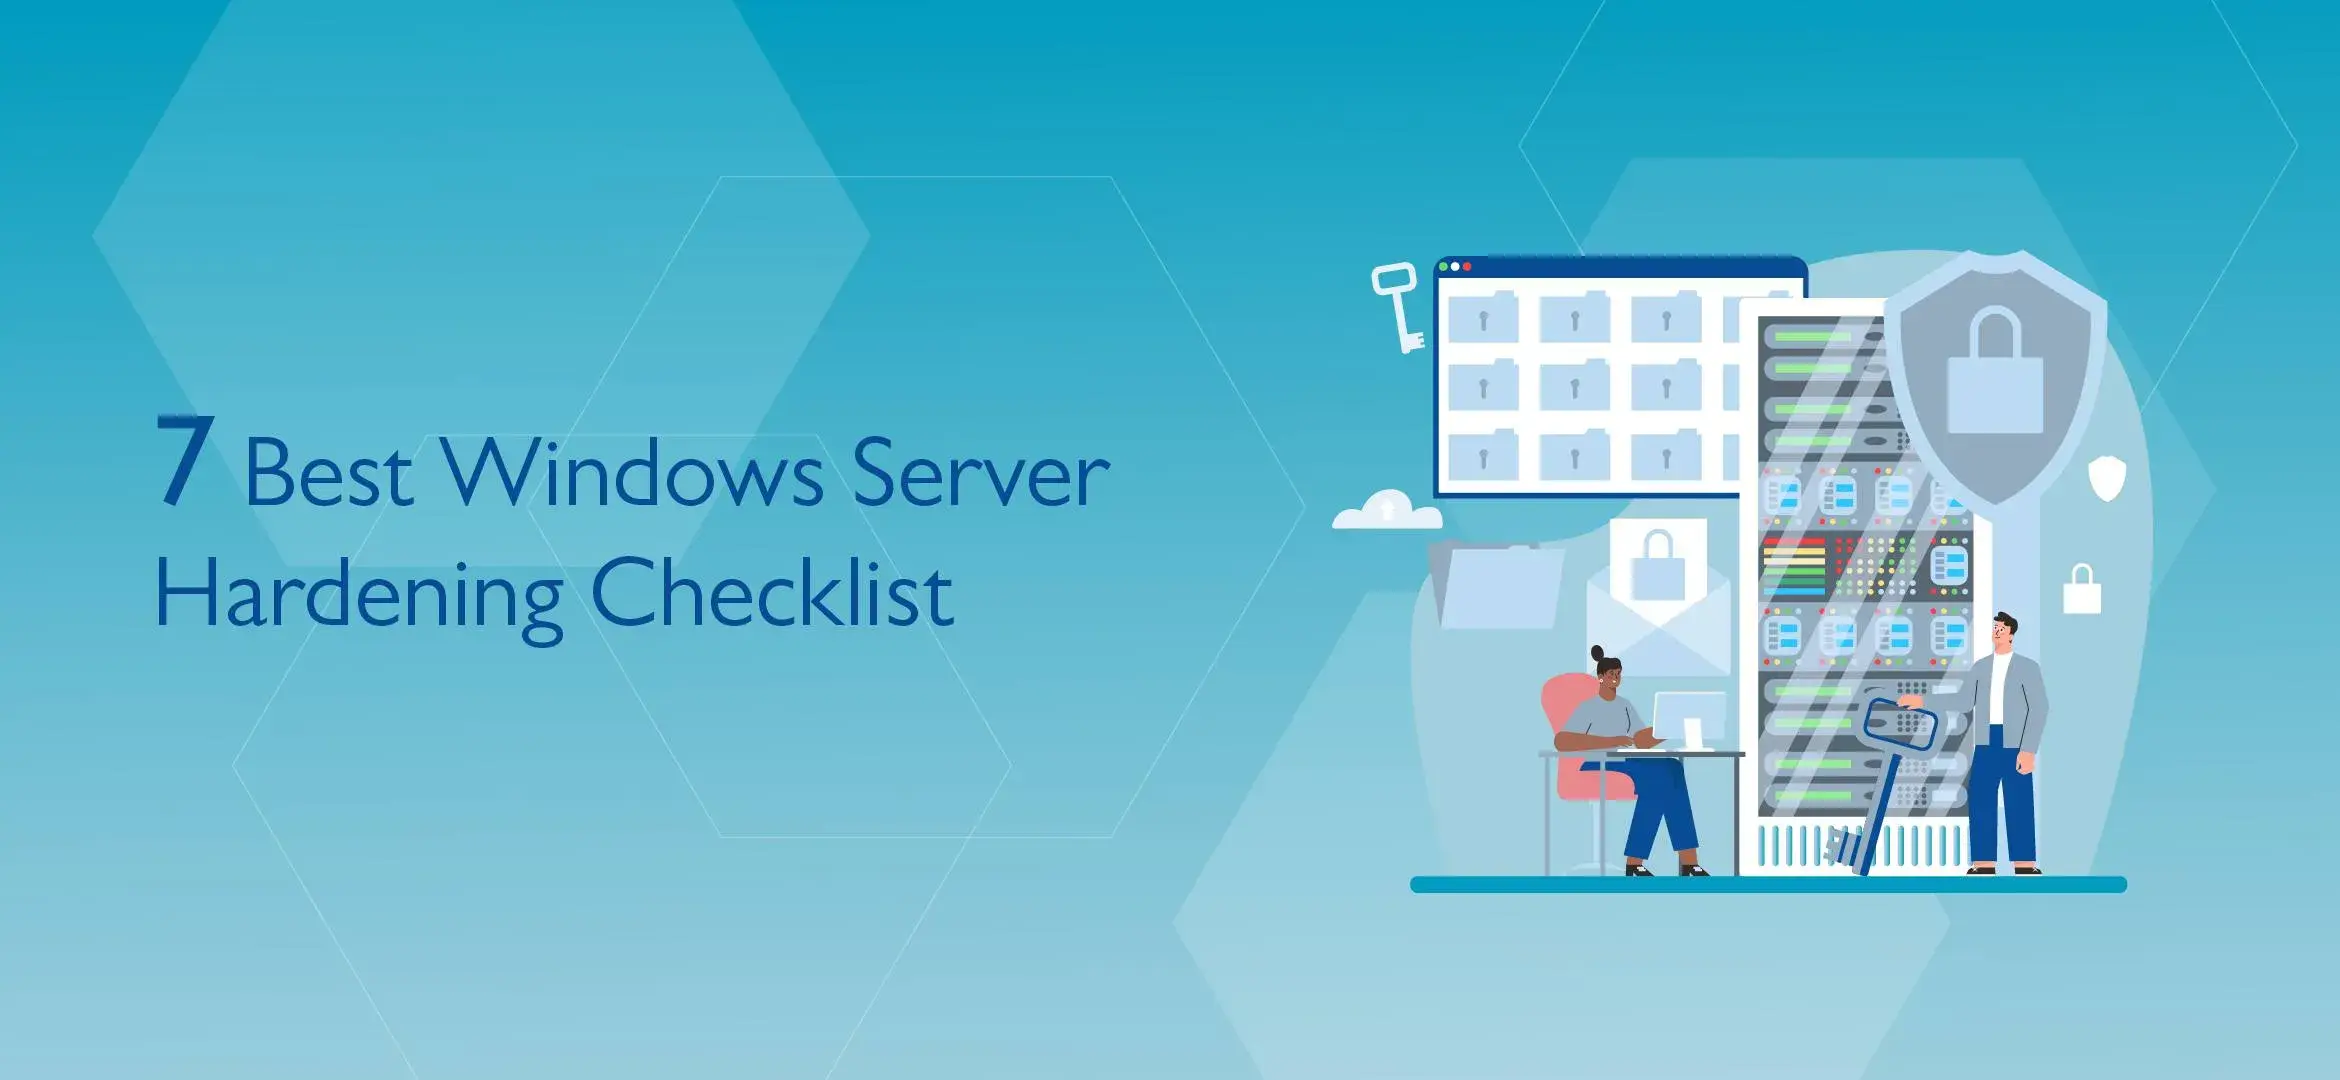 7 Best Windows Server Hardening Checklist